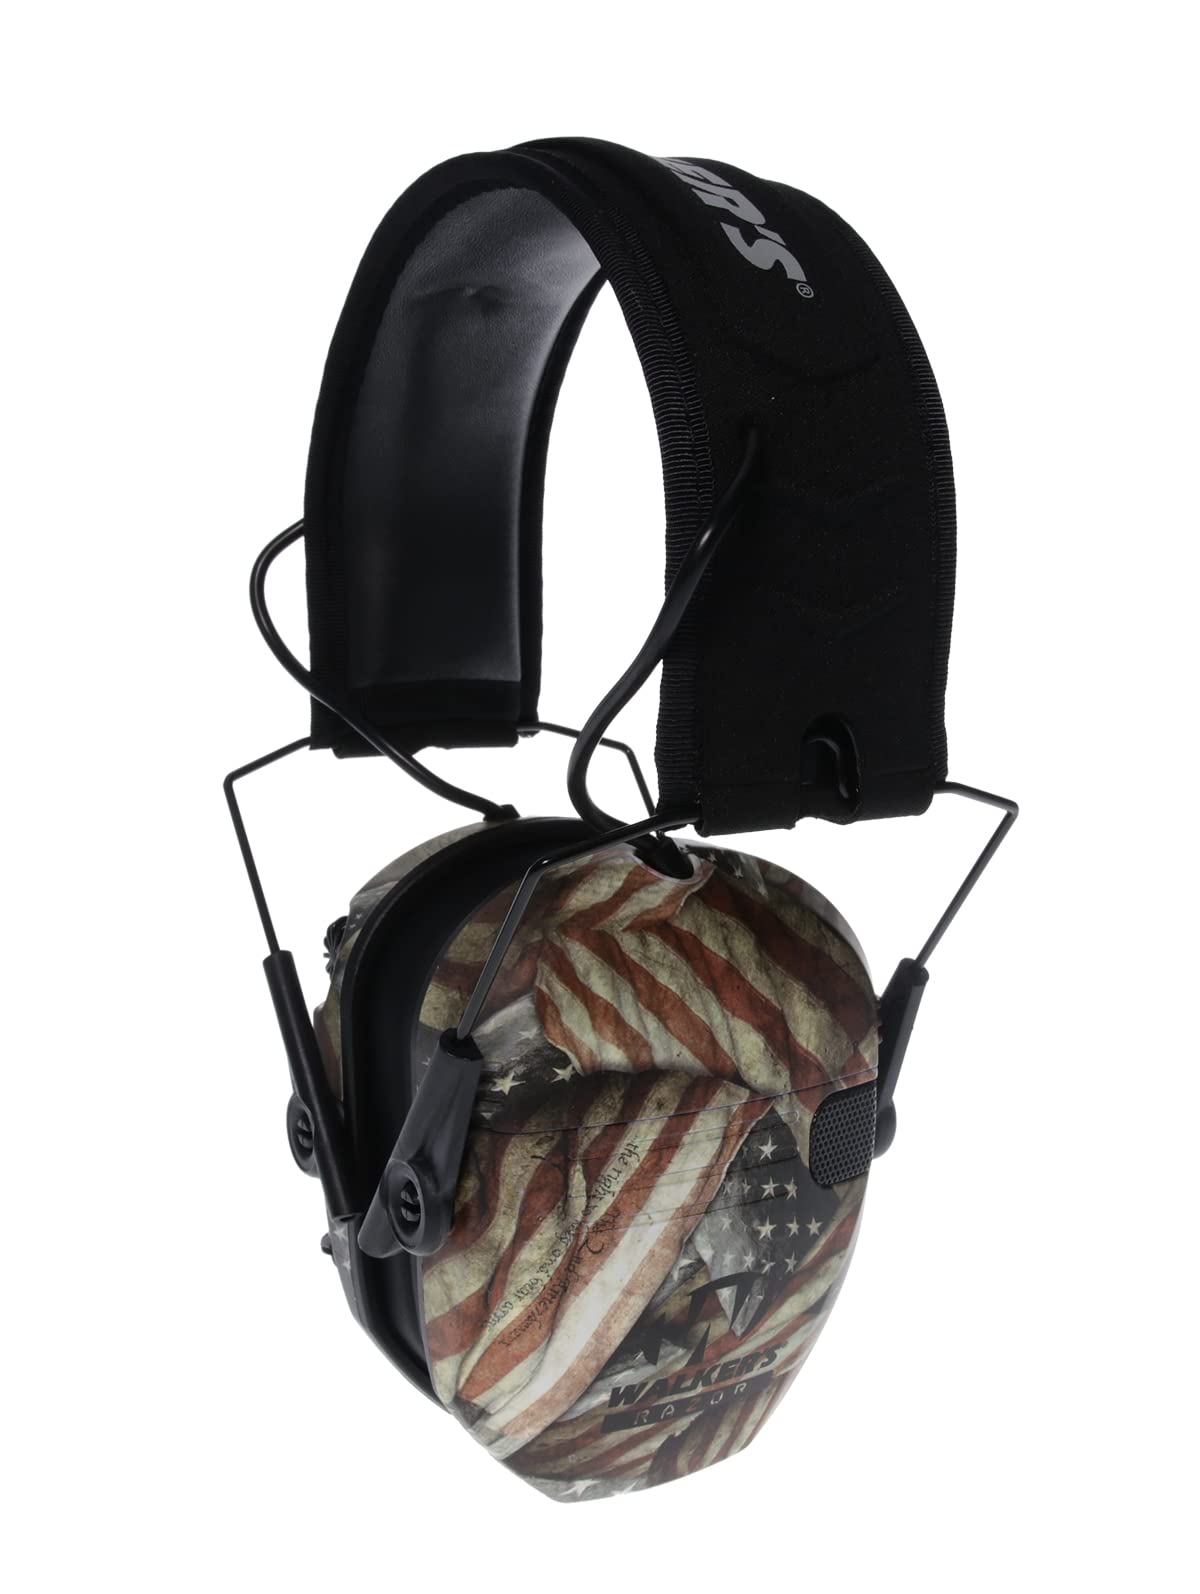 Walker's Razor Slim 超薄紧凑设计可调节范围射击狩猎听力保护电子耳罩...